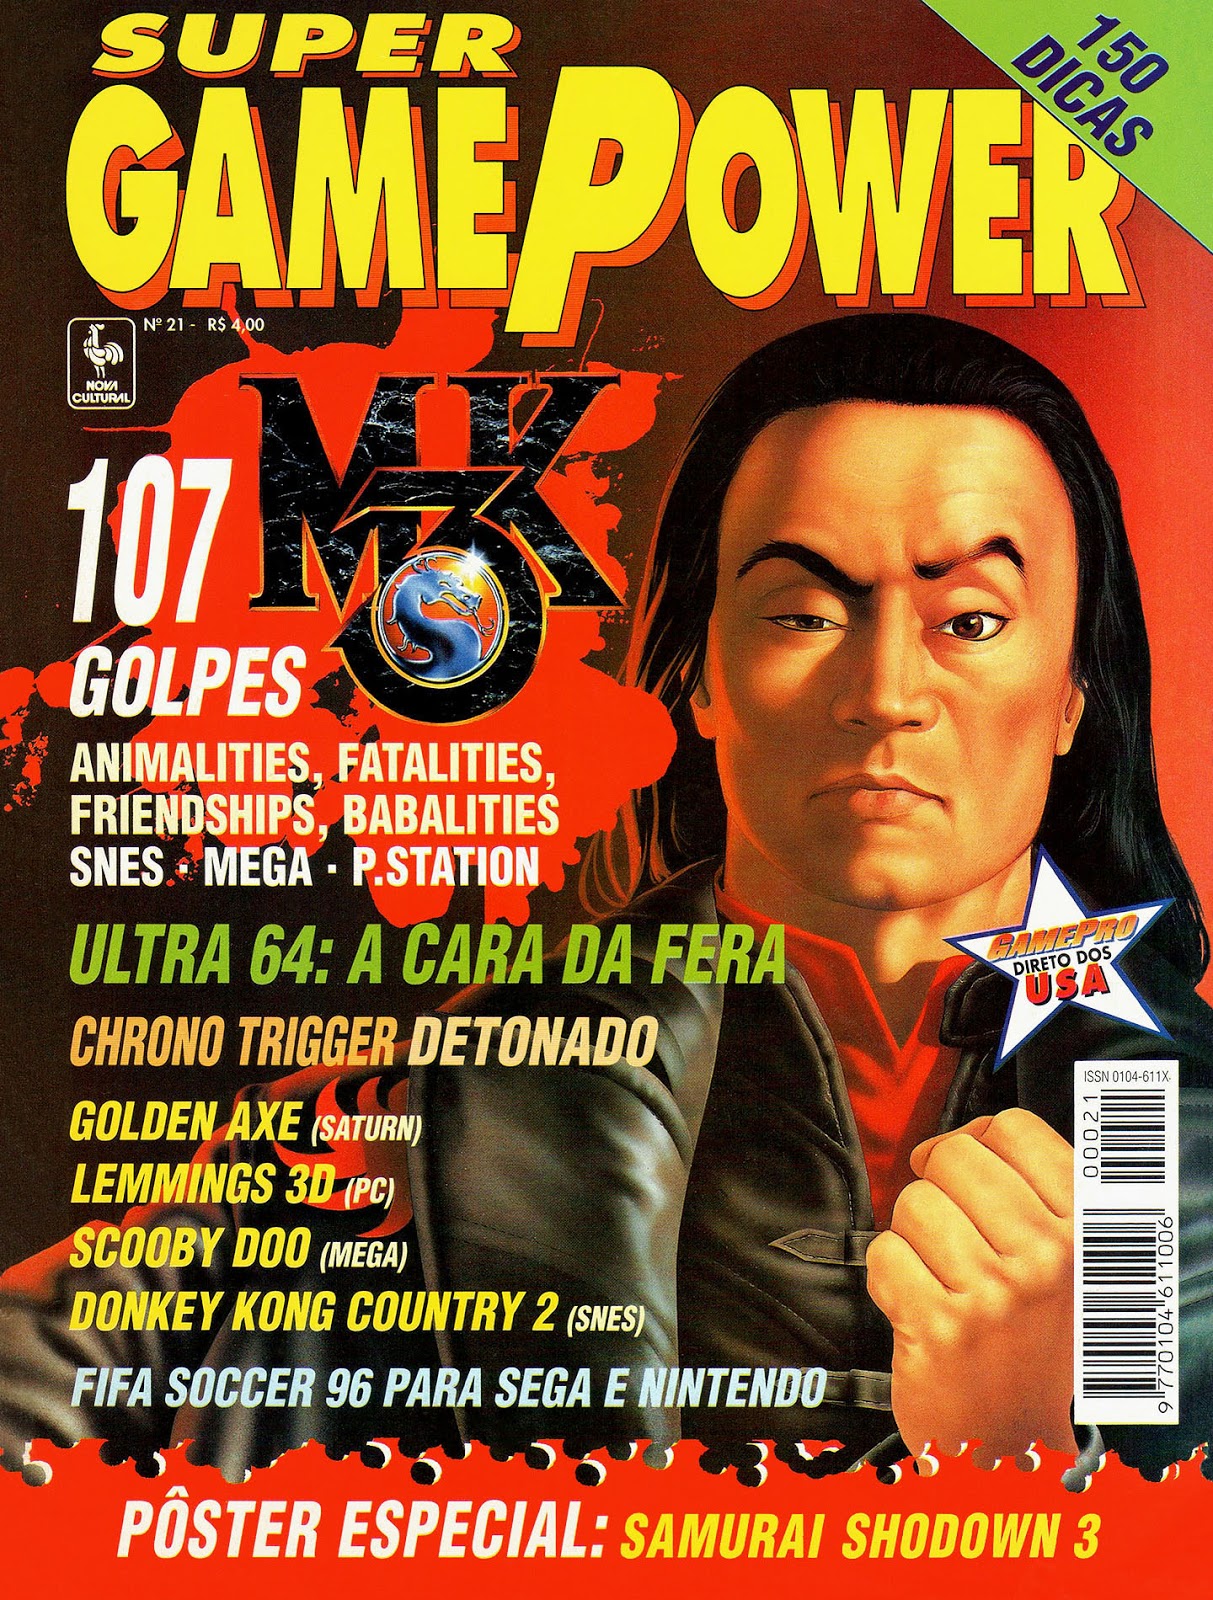 Revista Super Game Power Nº 52 Detonado Rockman & Forte